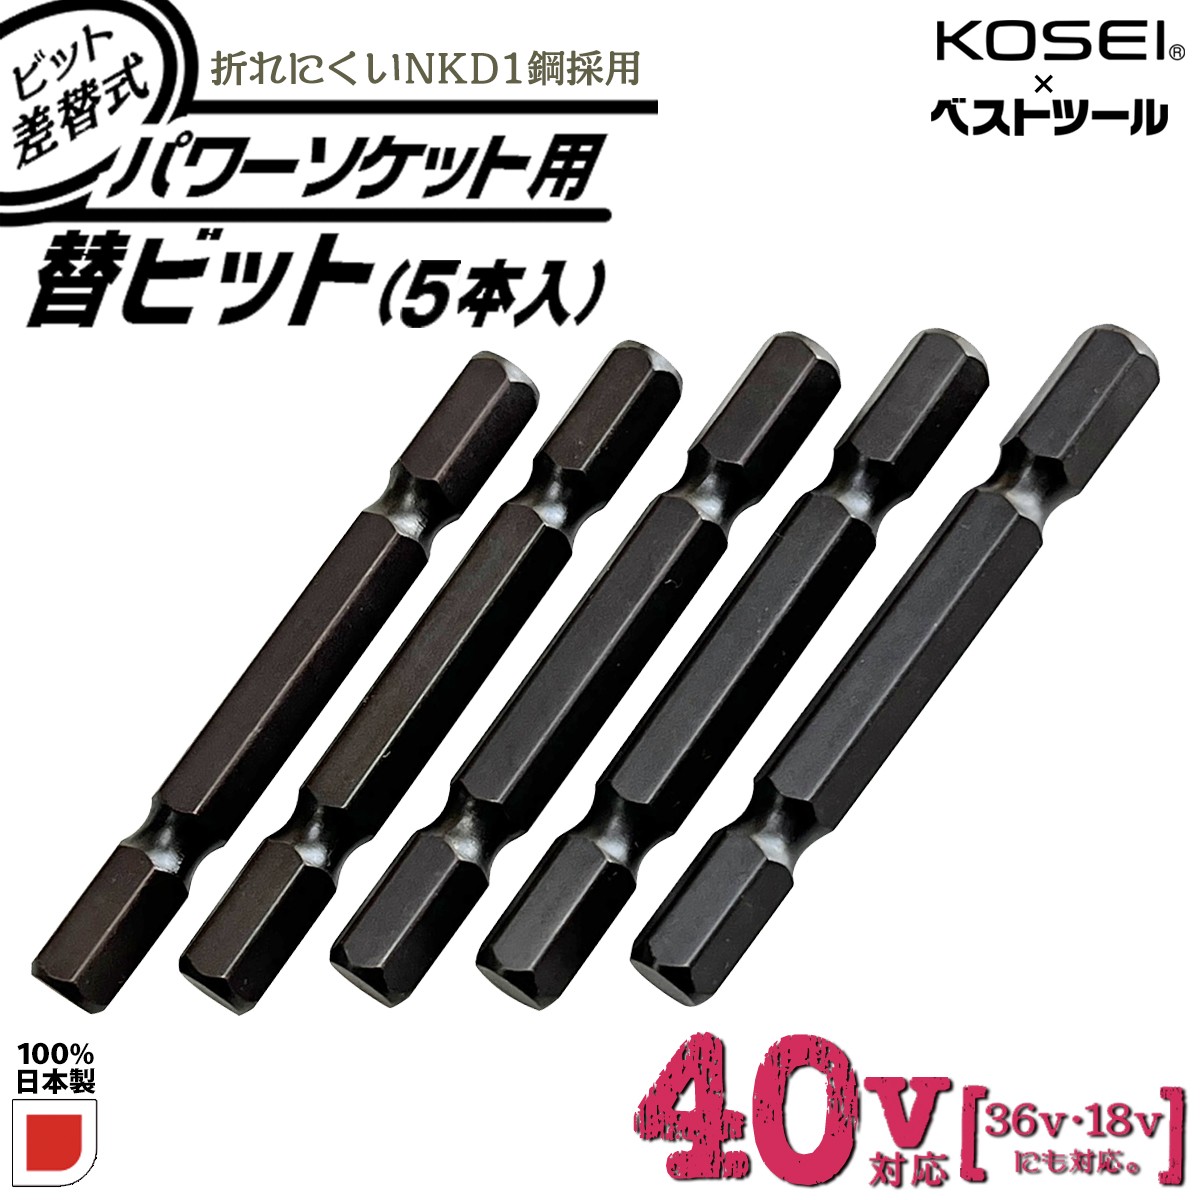 KOSEI 40V対応 ビット差替式パワーソケット 替えビット 5本組 6.35mm 新設計全長 57mm 折れにくい 高強度NKD-1鋼  高トルク対応設計 日本製 BSPT-5B ベストツール